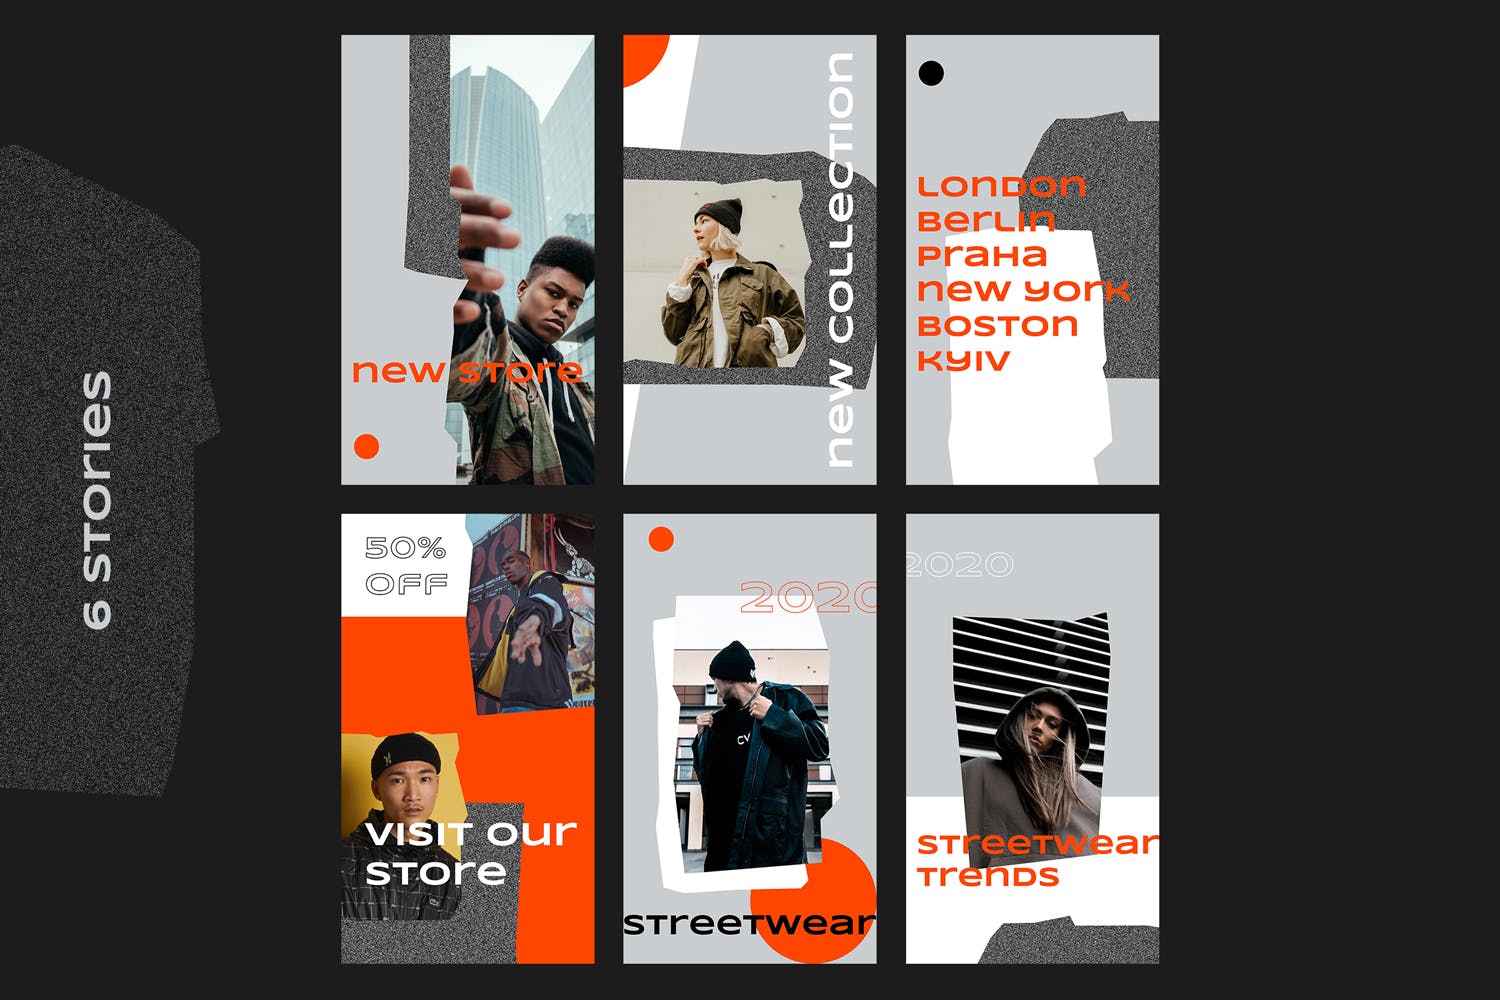 奢侈品牌Instagram社交媒体故事贴图工具包 Instagram Stories Kit设计素材模板